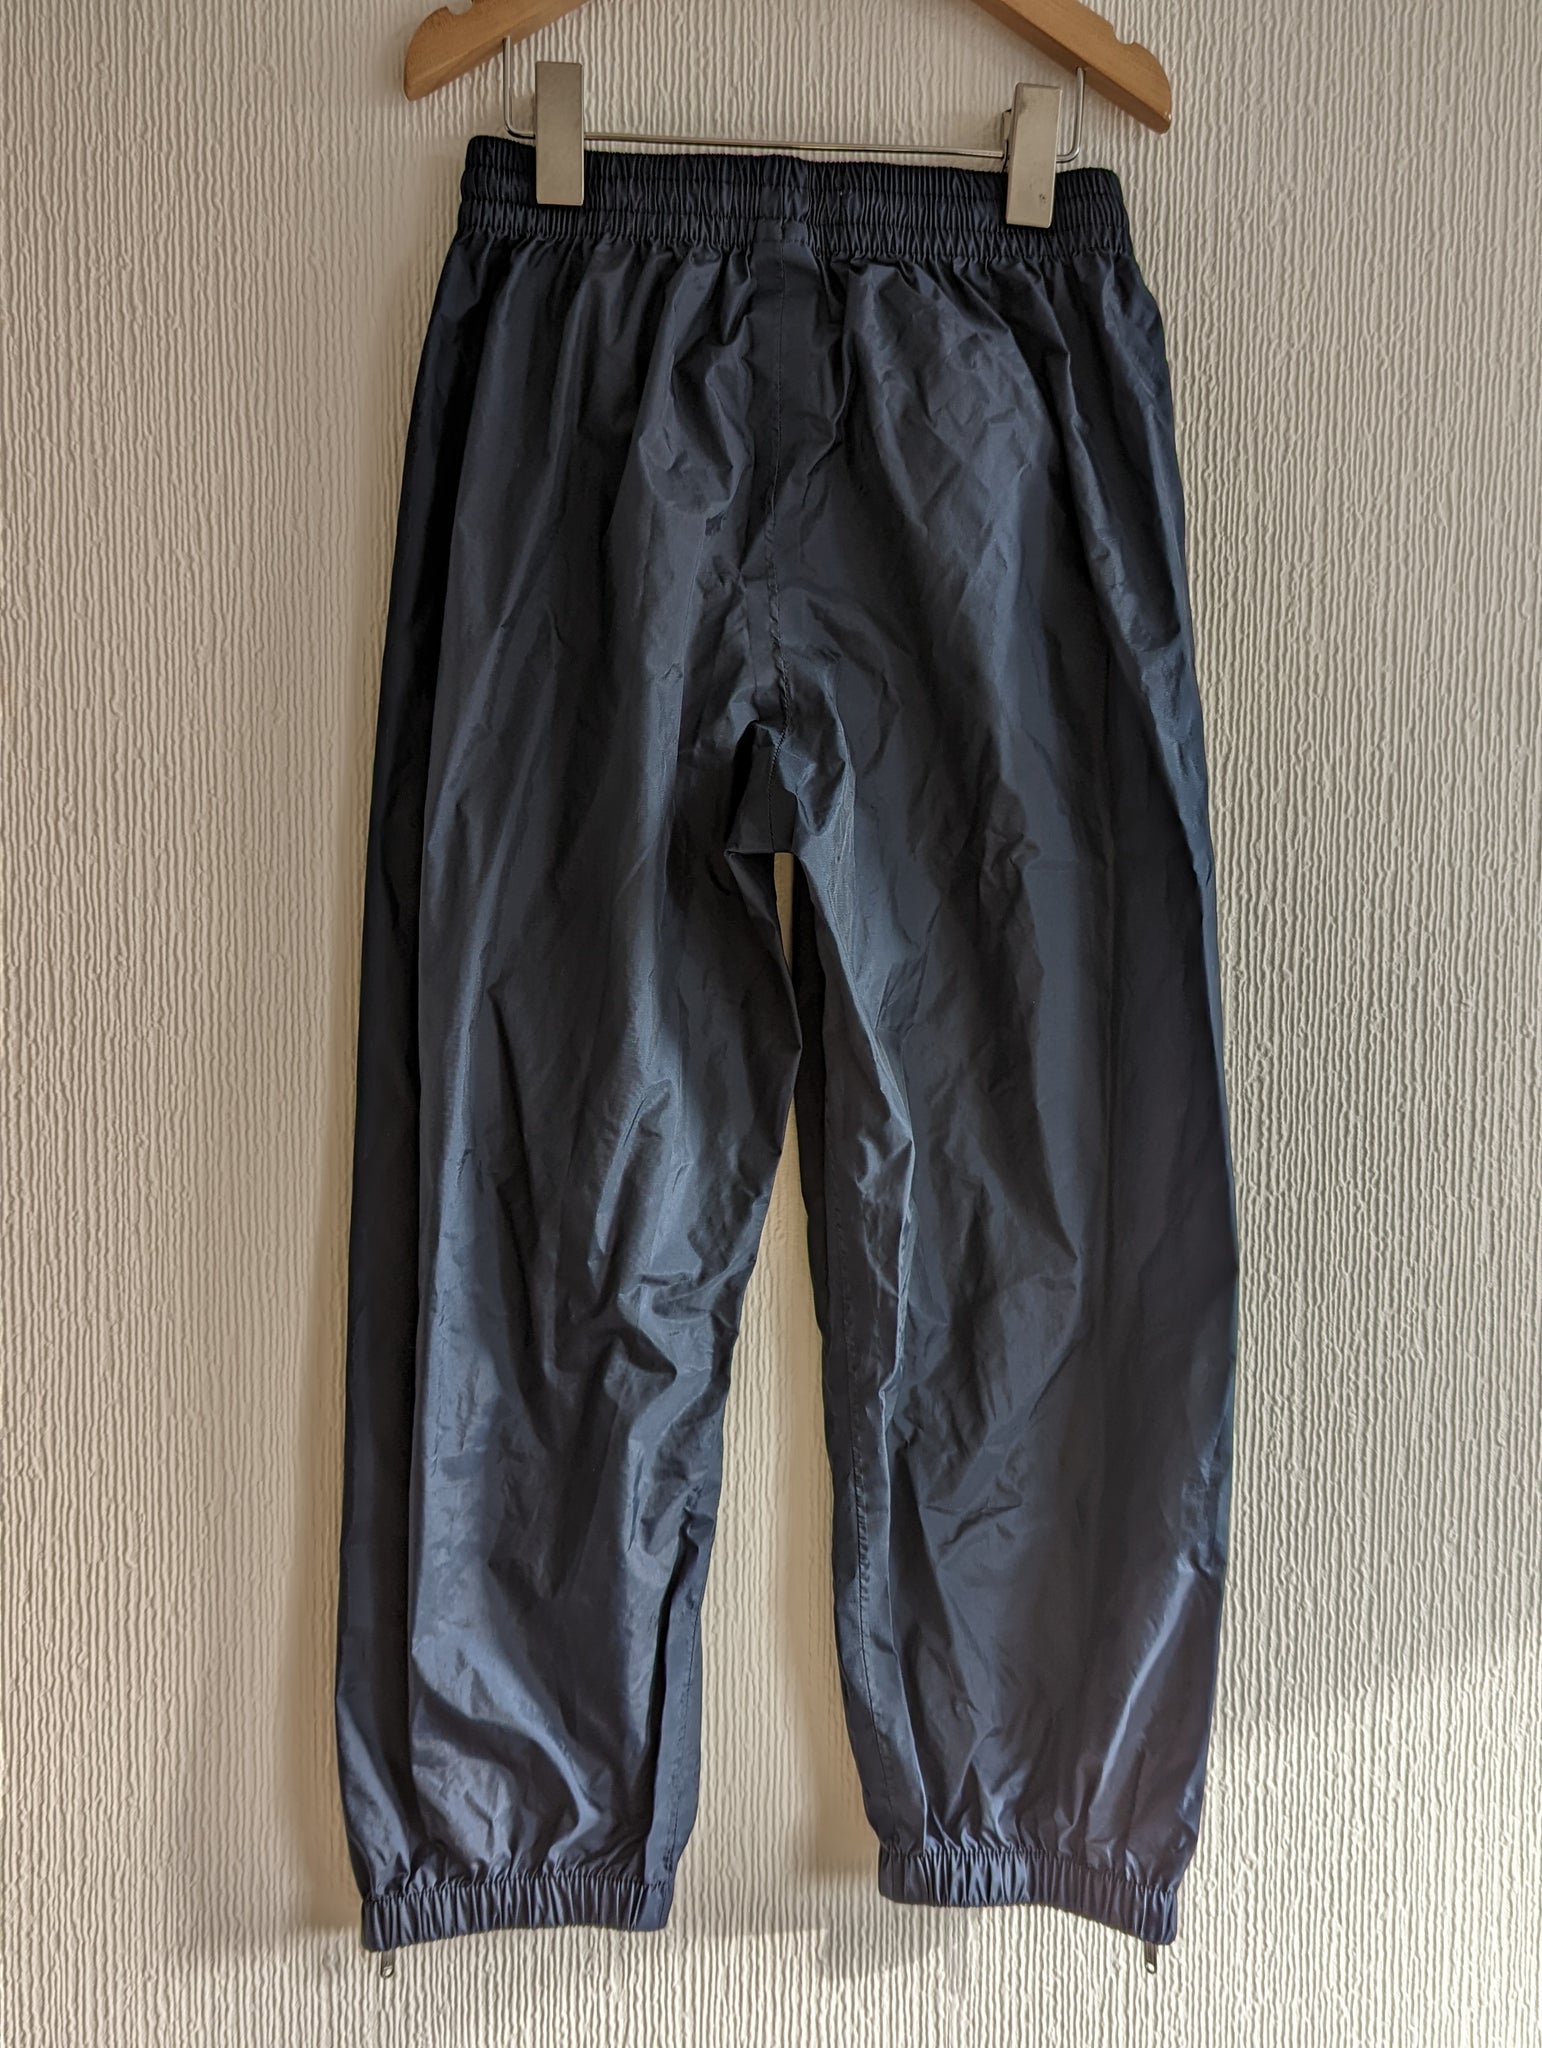 Women's golf waterproof trousers - RW500 navy blue - Decathlon